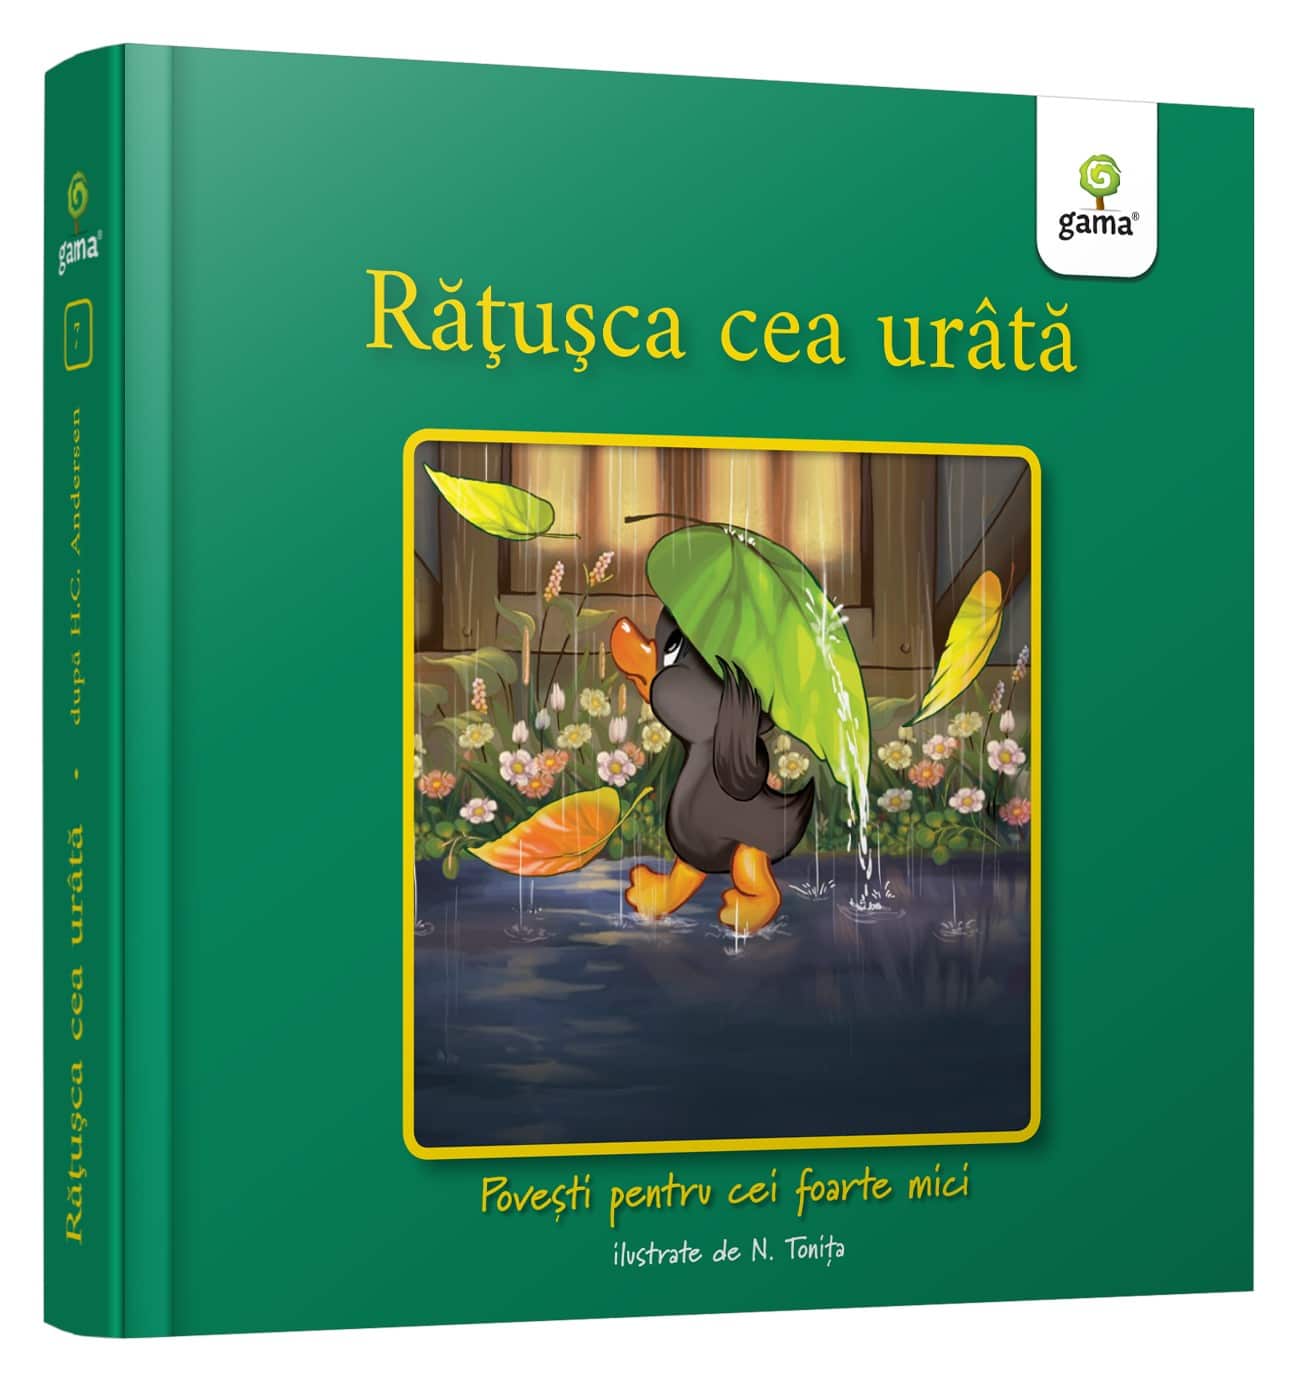 ratusca_cea_urata